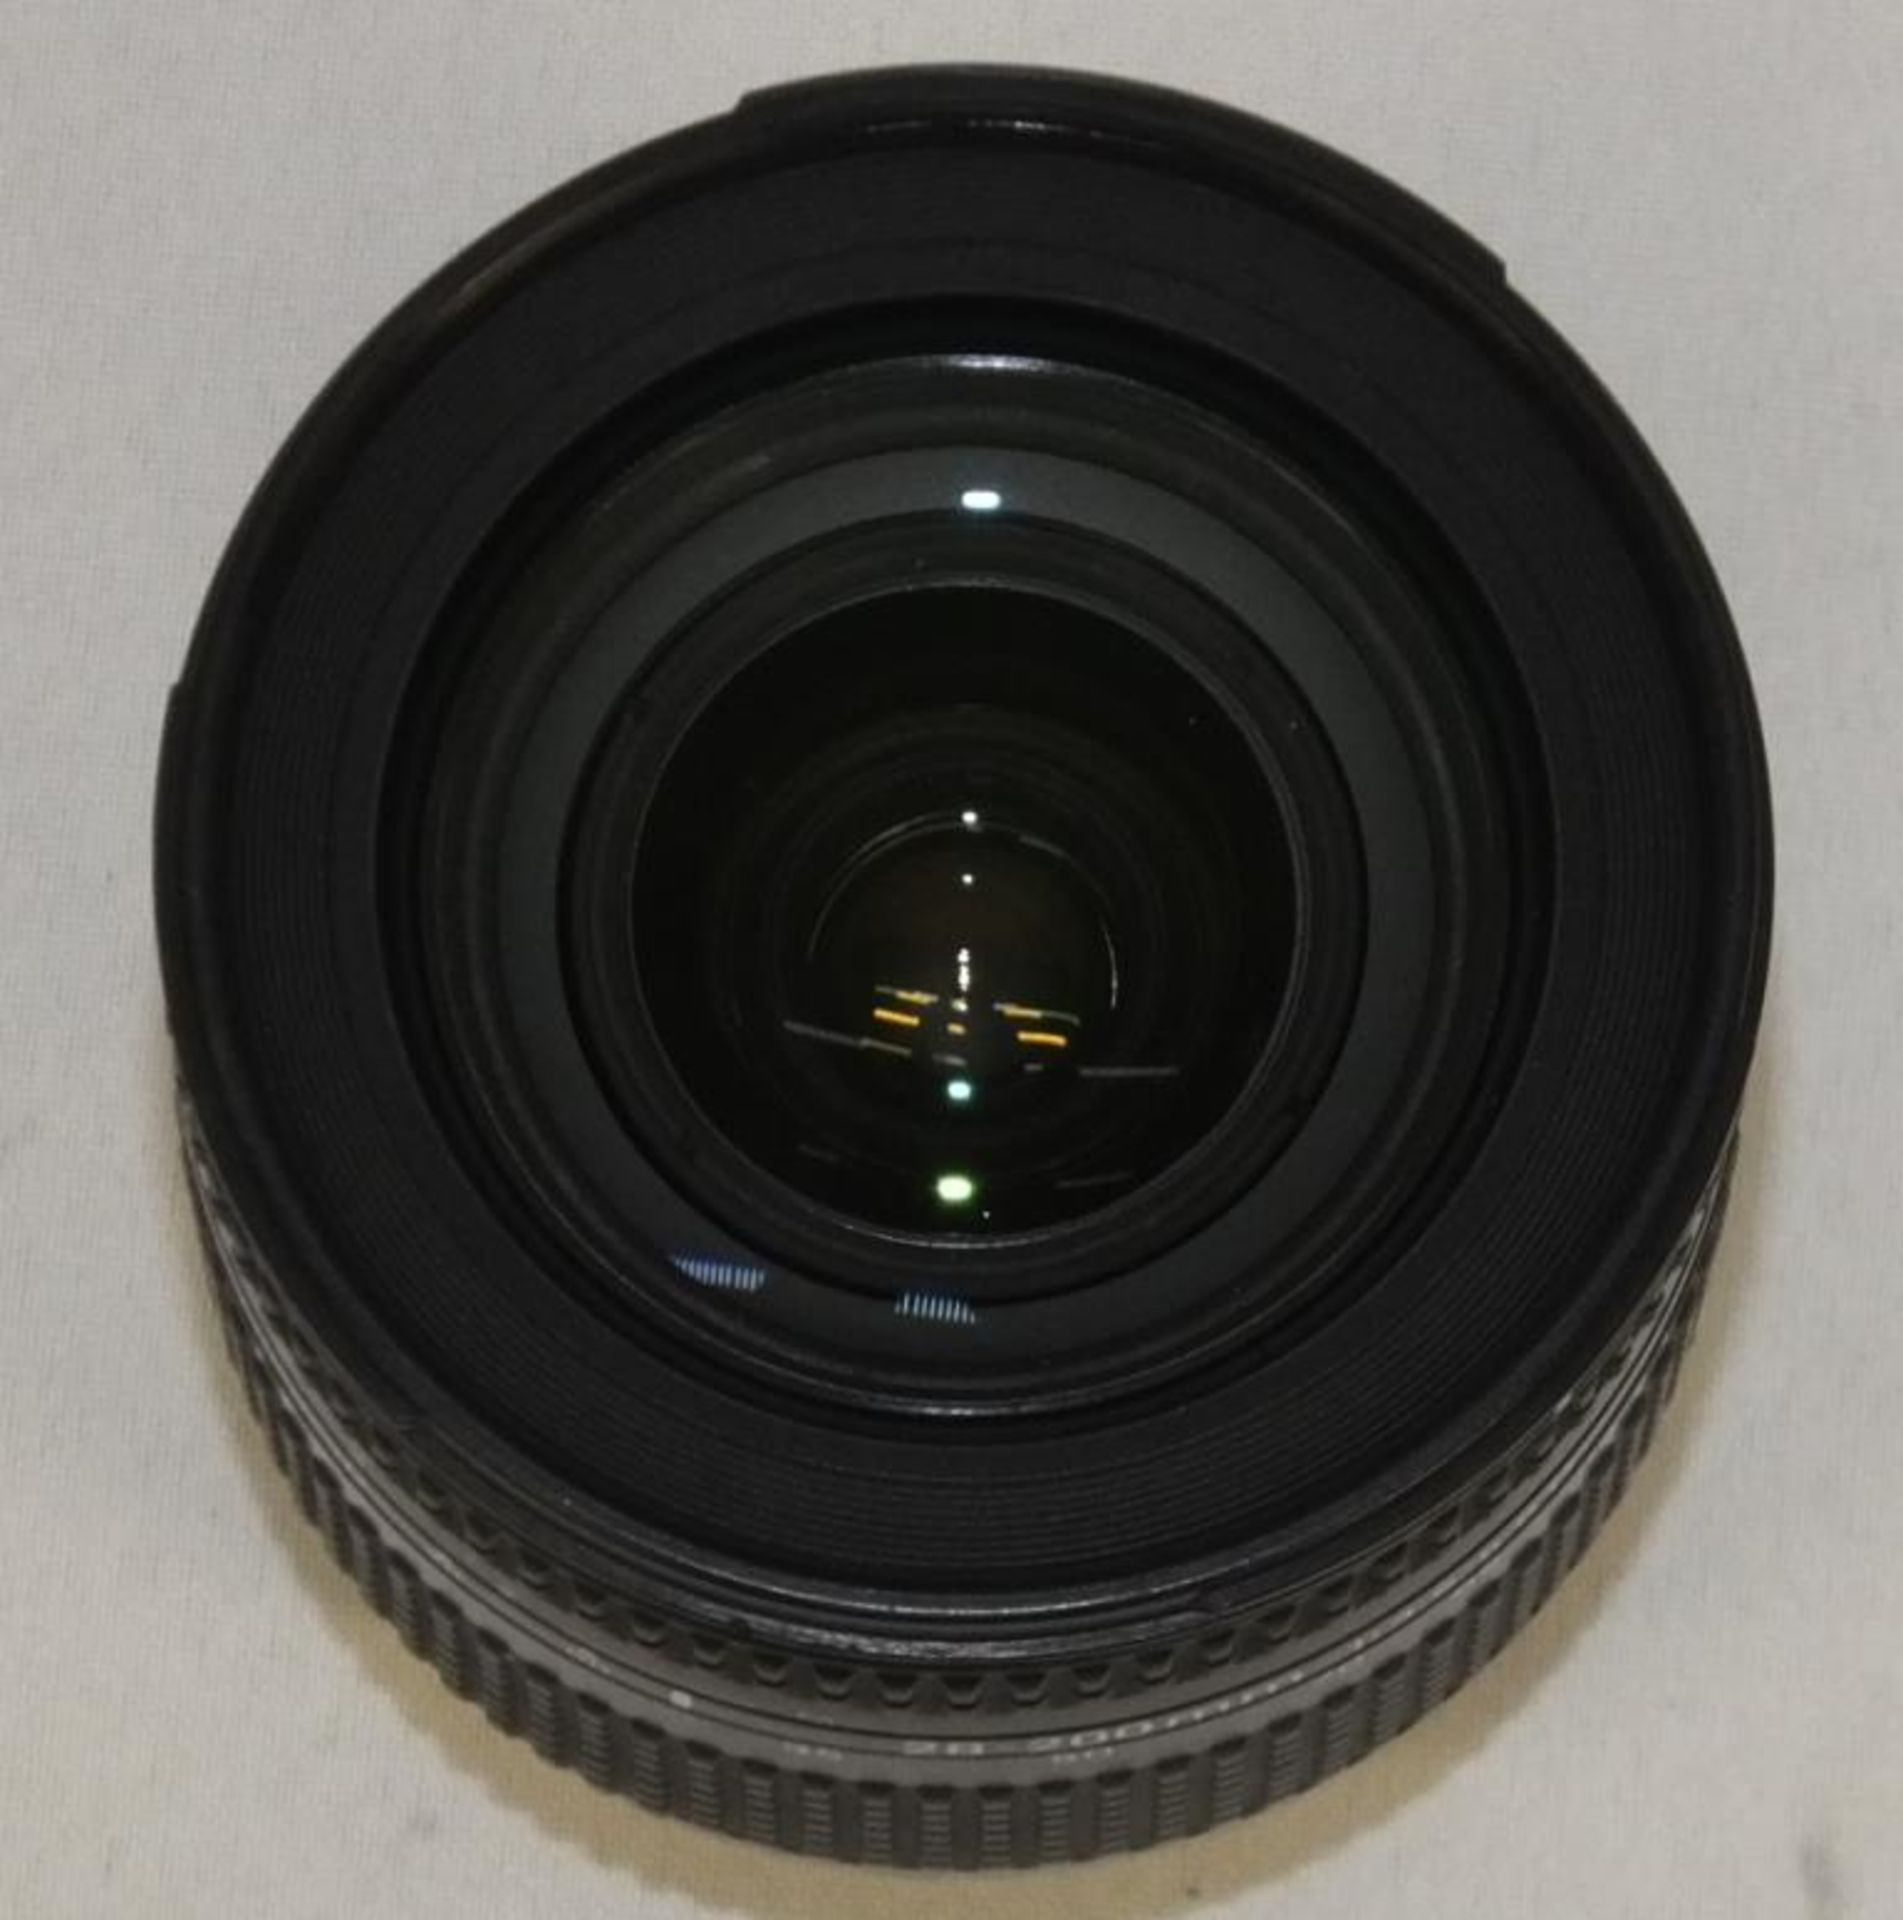 Nikon AF Nikkor 28-200mm 1:3.5-5.6 D Lens (only one lens cover) with HOYA HMC 72mm UV(O) Filter - Image 5 of 6